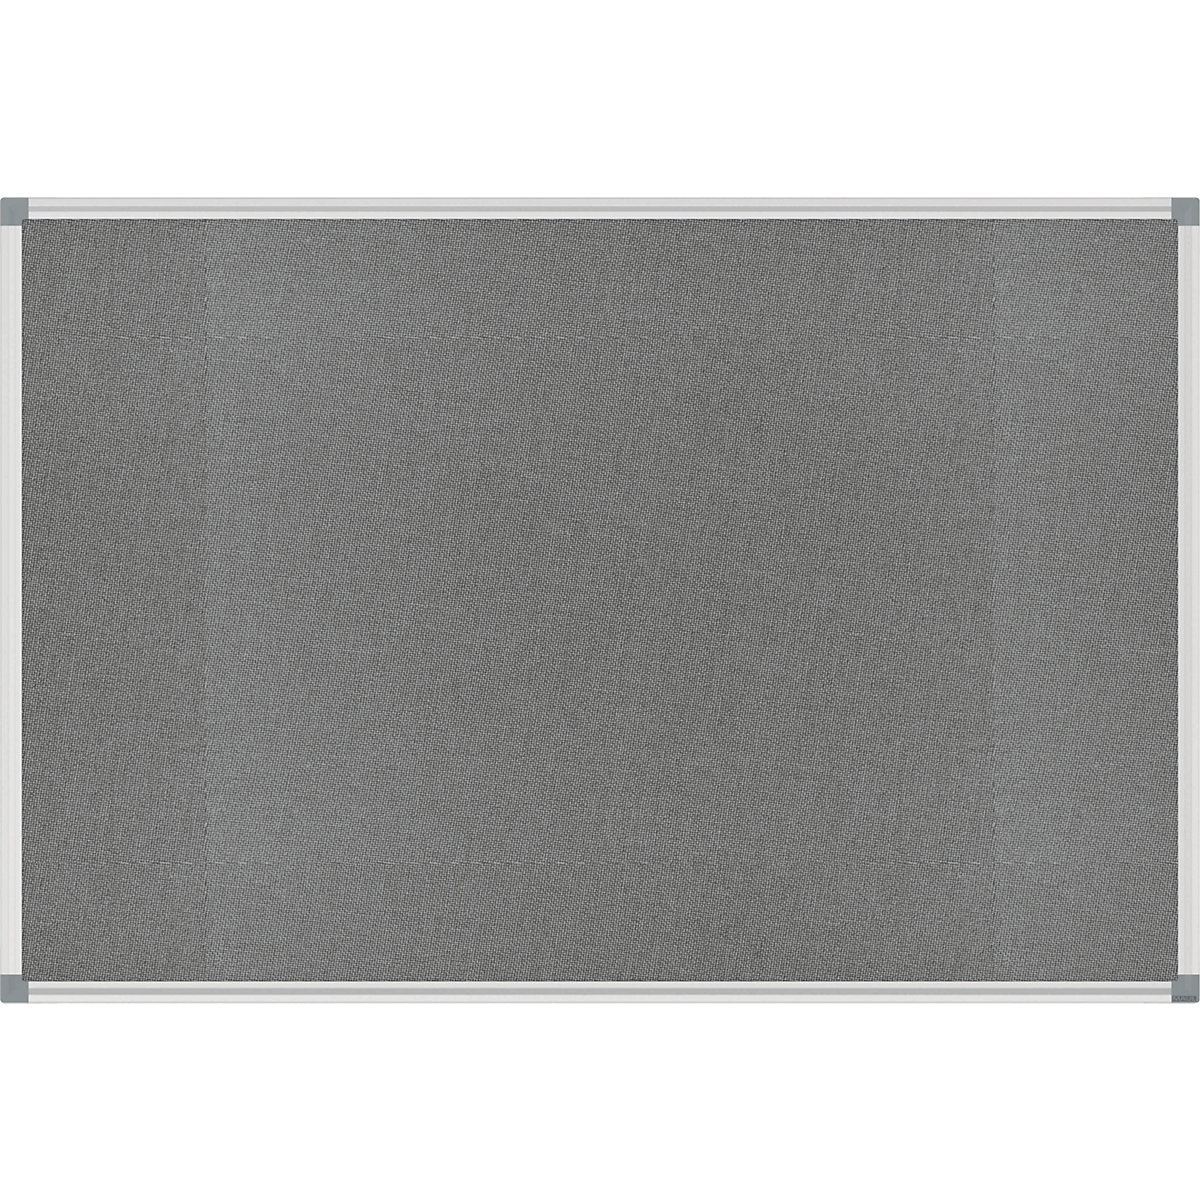 Špendlíková tabuľa STANDARD – MAUL, plstený poťah, šedá, š x v 900 x 600 mm-4